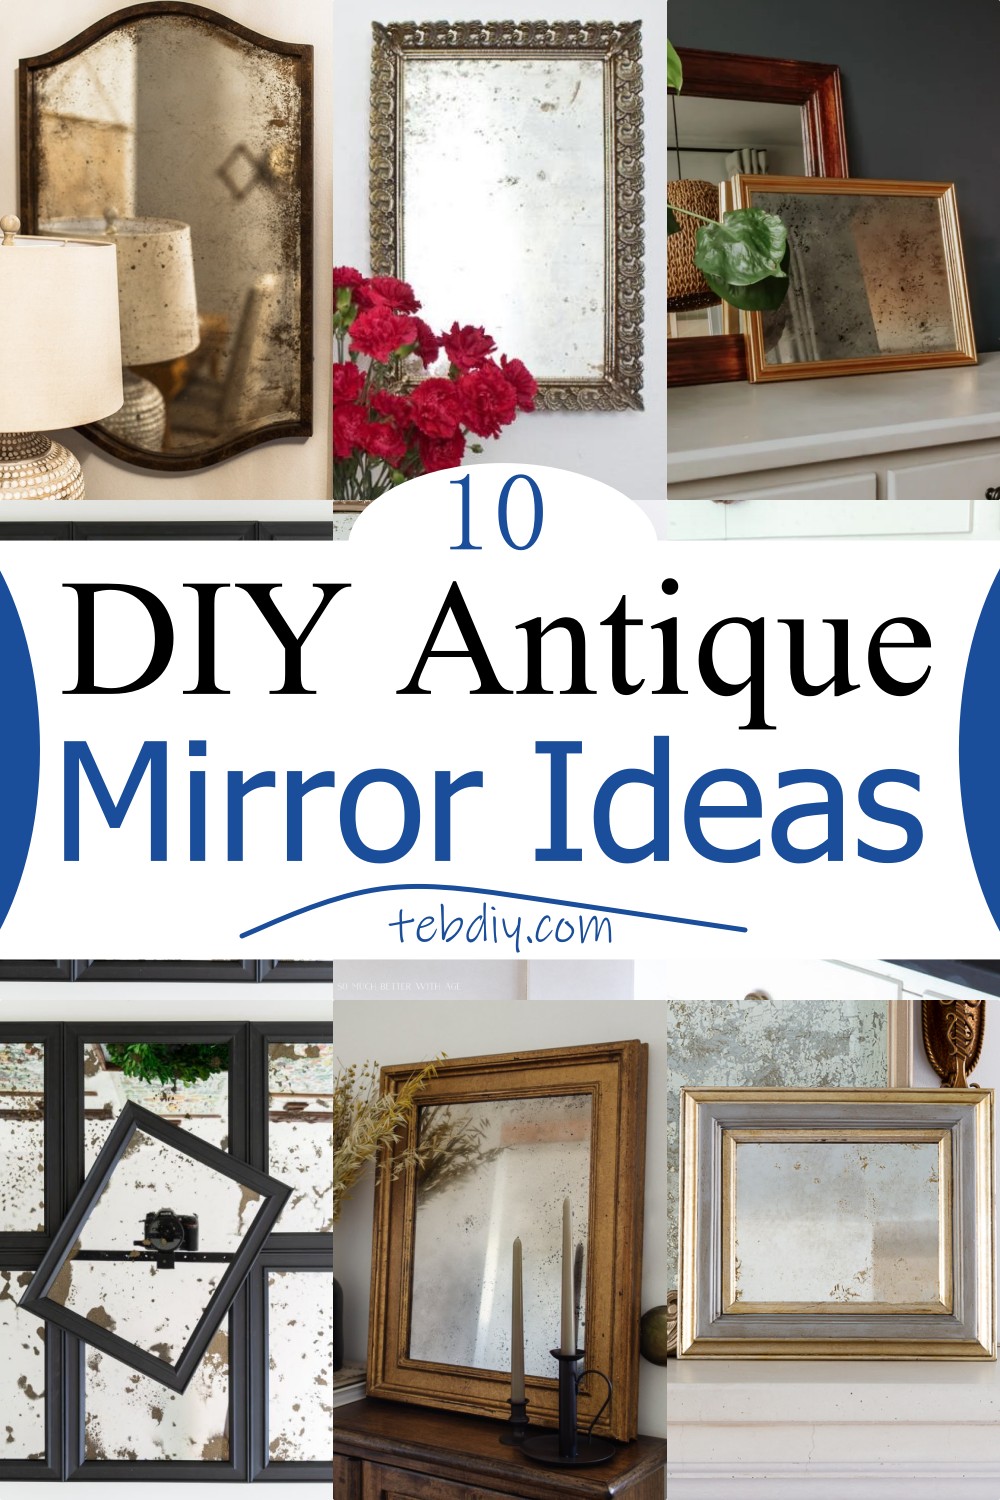 10 DIY Antique Mirror Ideas